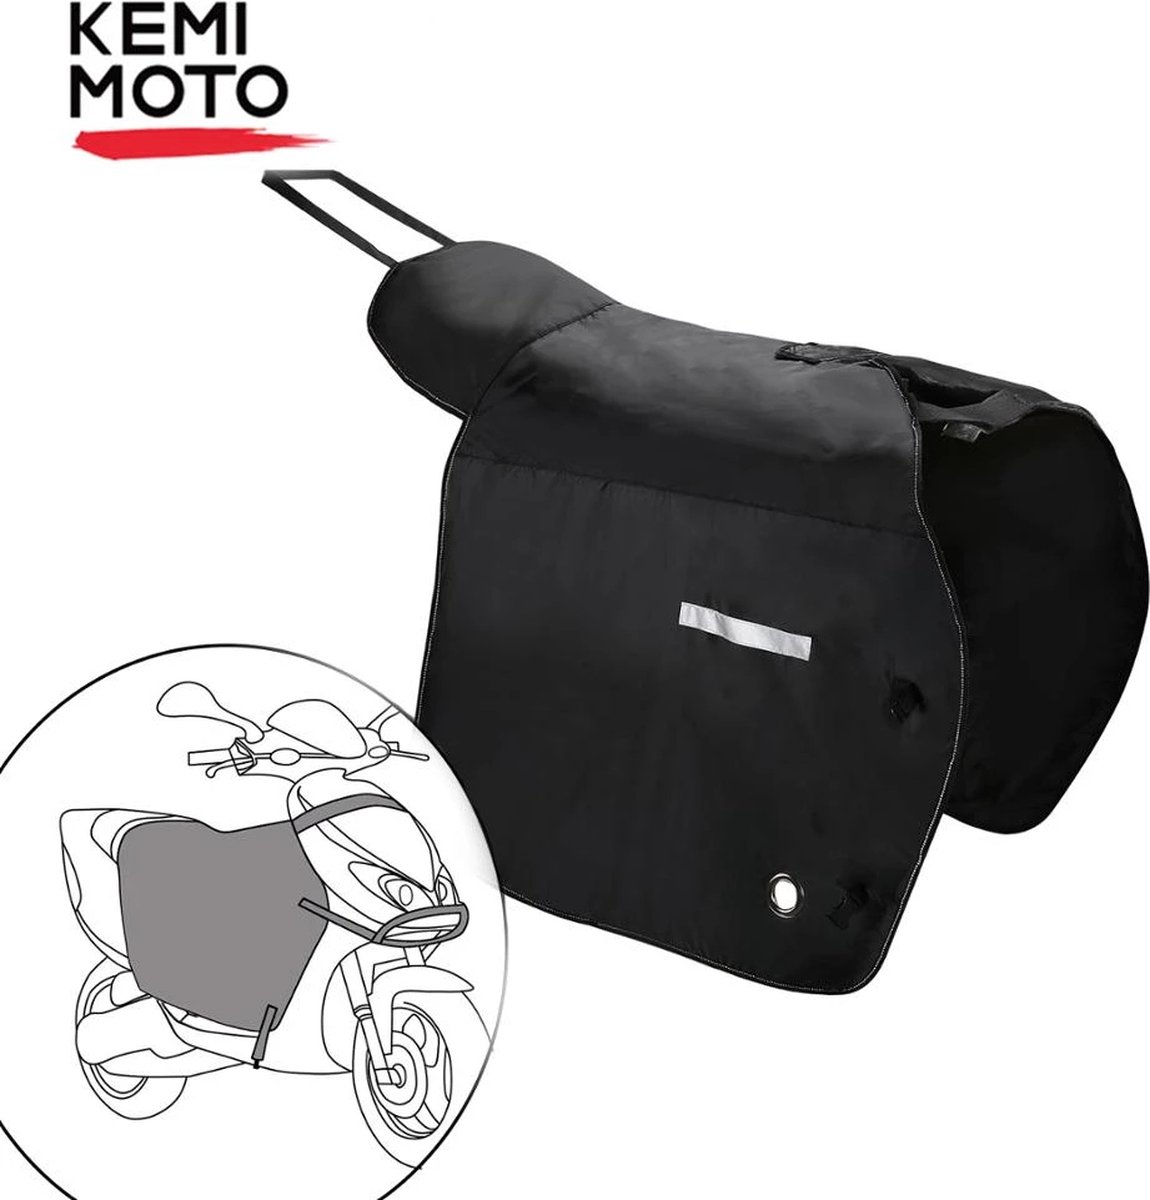 Kemimoto Scooter Beenkleed - Beenkleed voor Piaggio - Beenkleed Voor Vespa - Beenkleed Voor Honda - Beenwarmer - Waterdicht - Winddicht